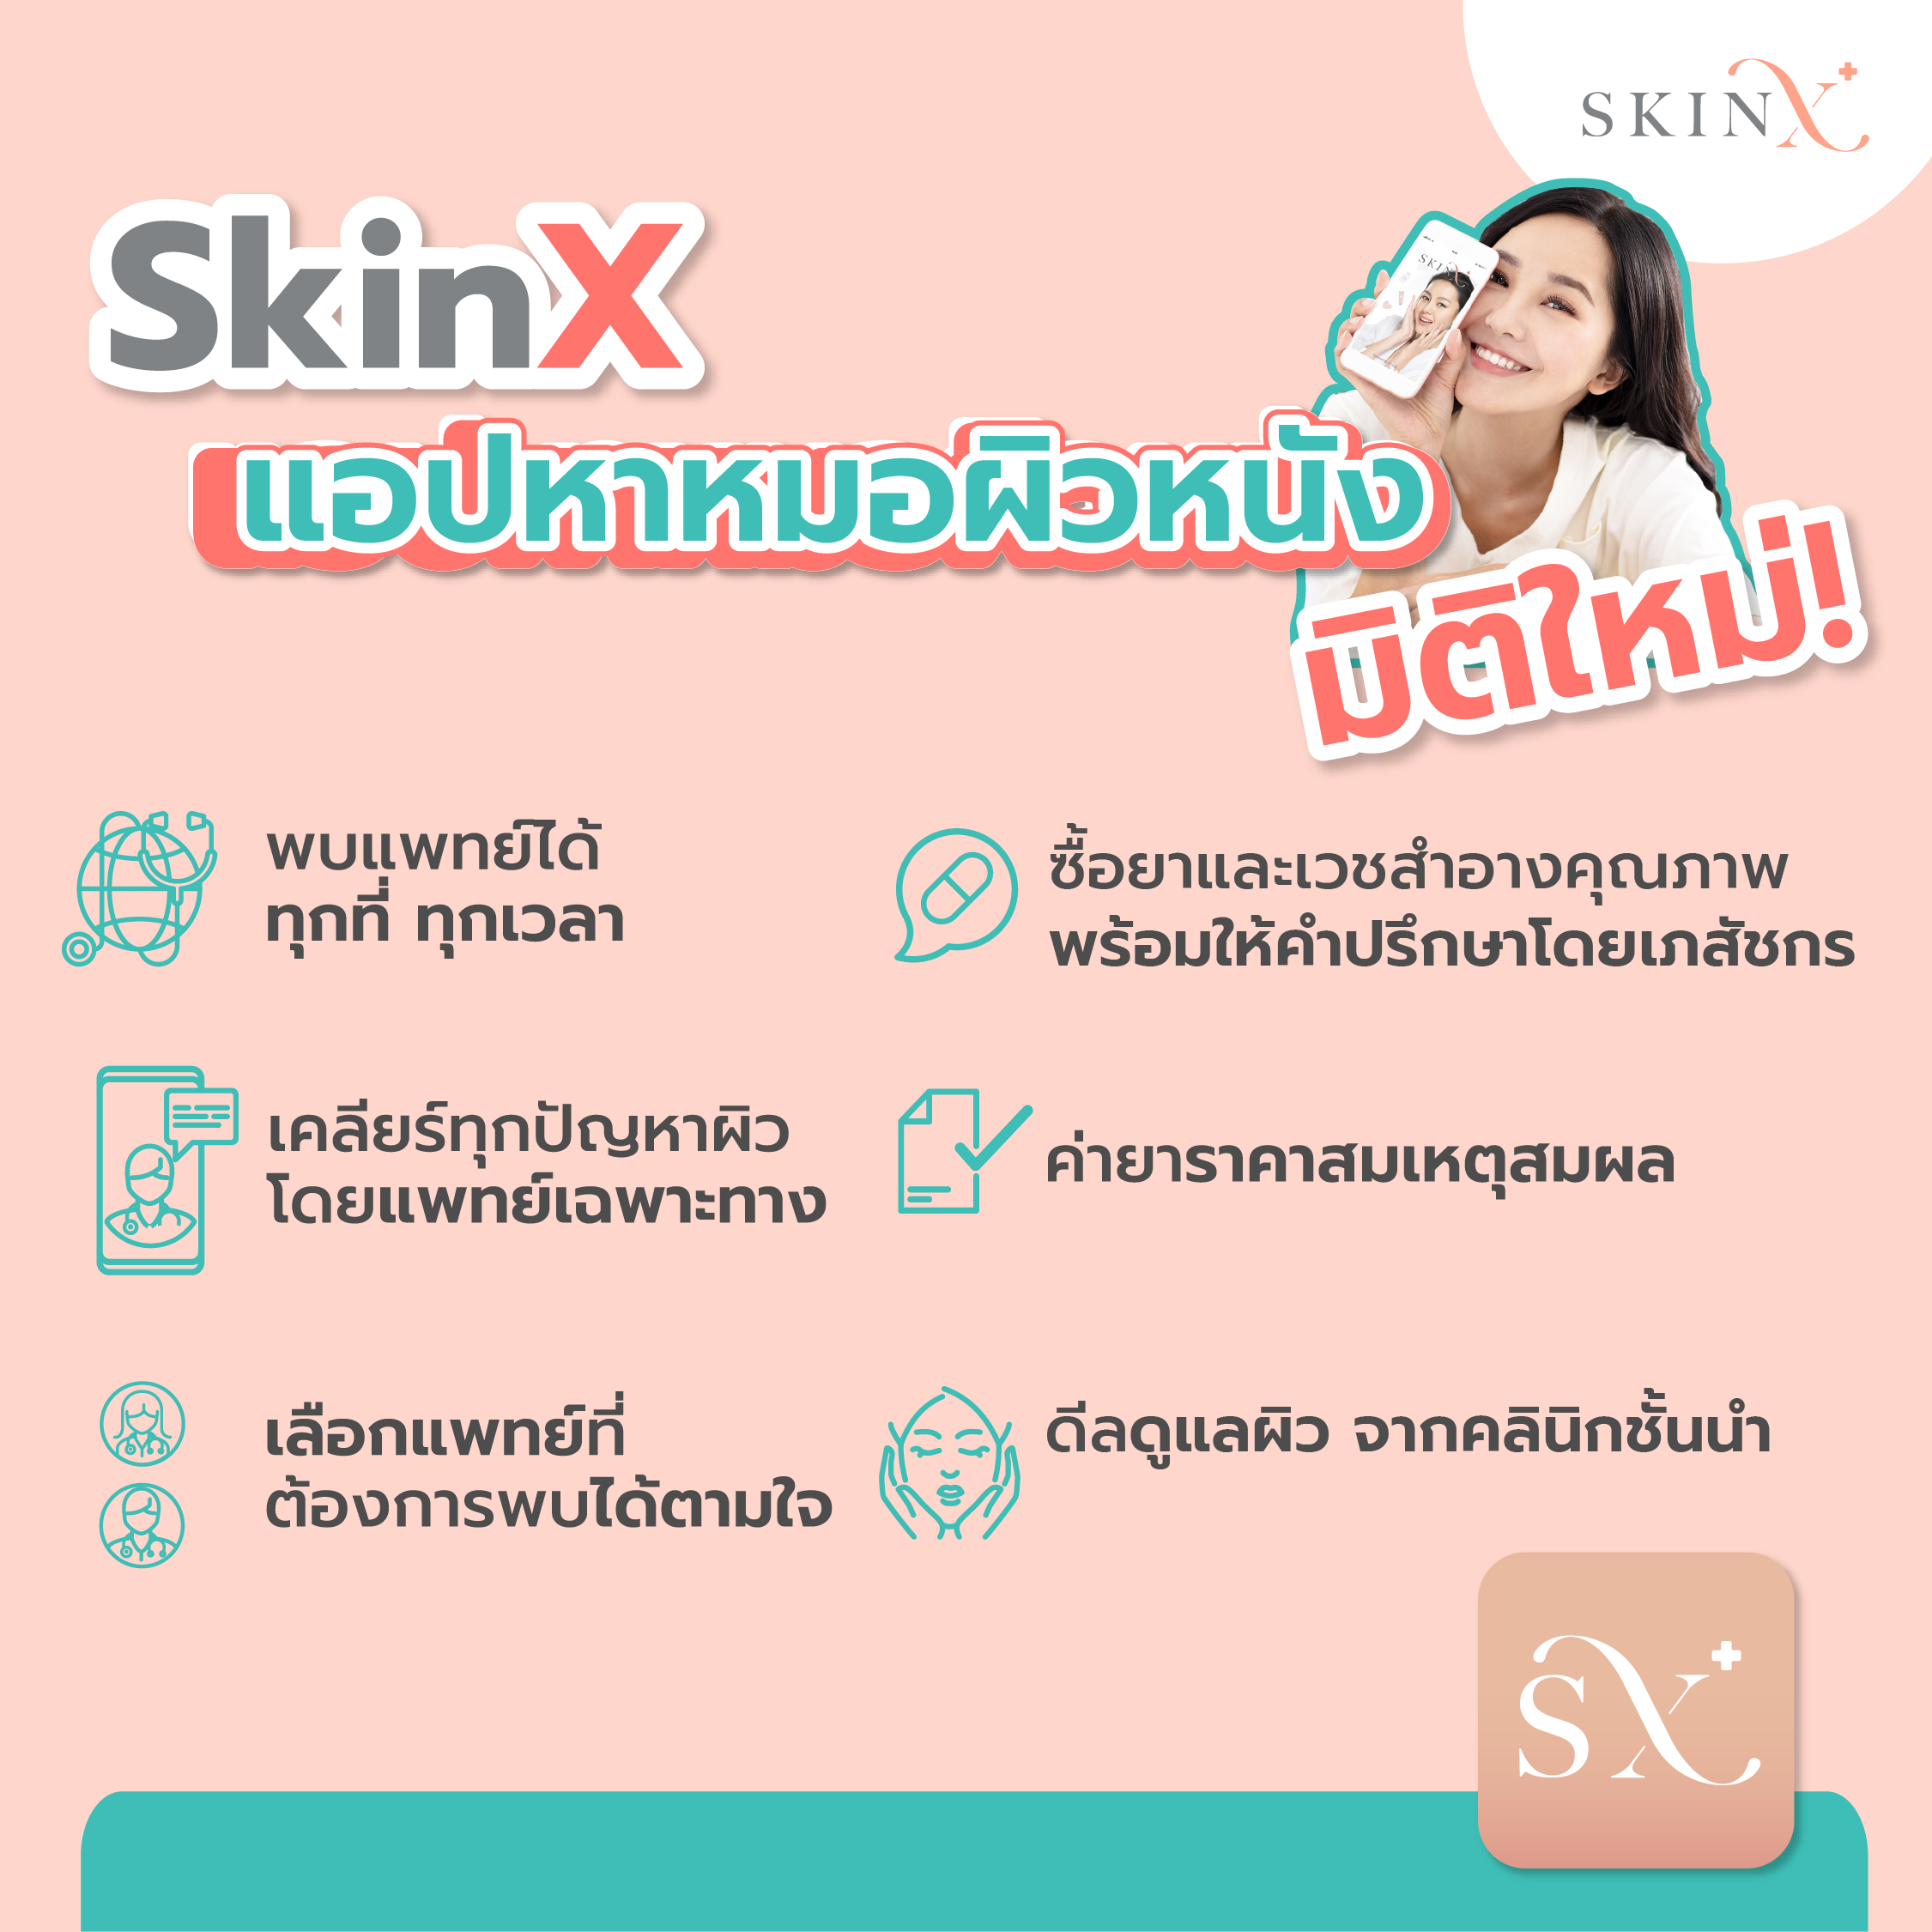 มุมมองเพิ่มเติมของสินค้า SkinX E-Vo ส่วนลด 1,000 บาท สำหรับทุกการใช้จ่ายใน SkinX